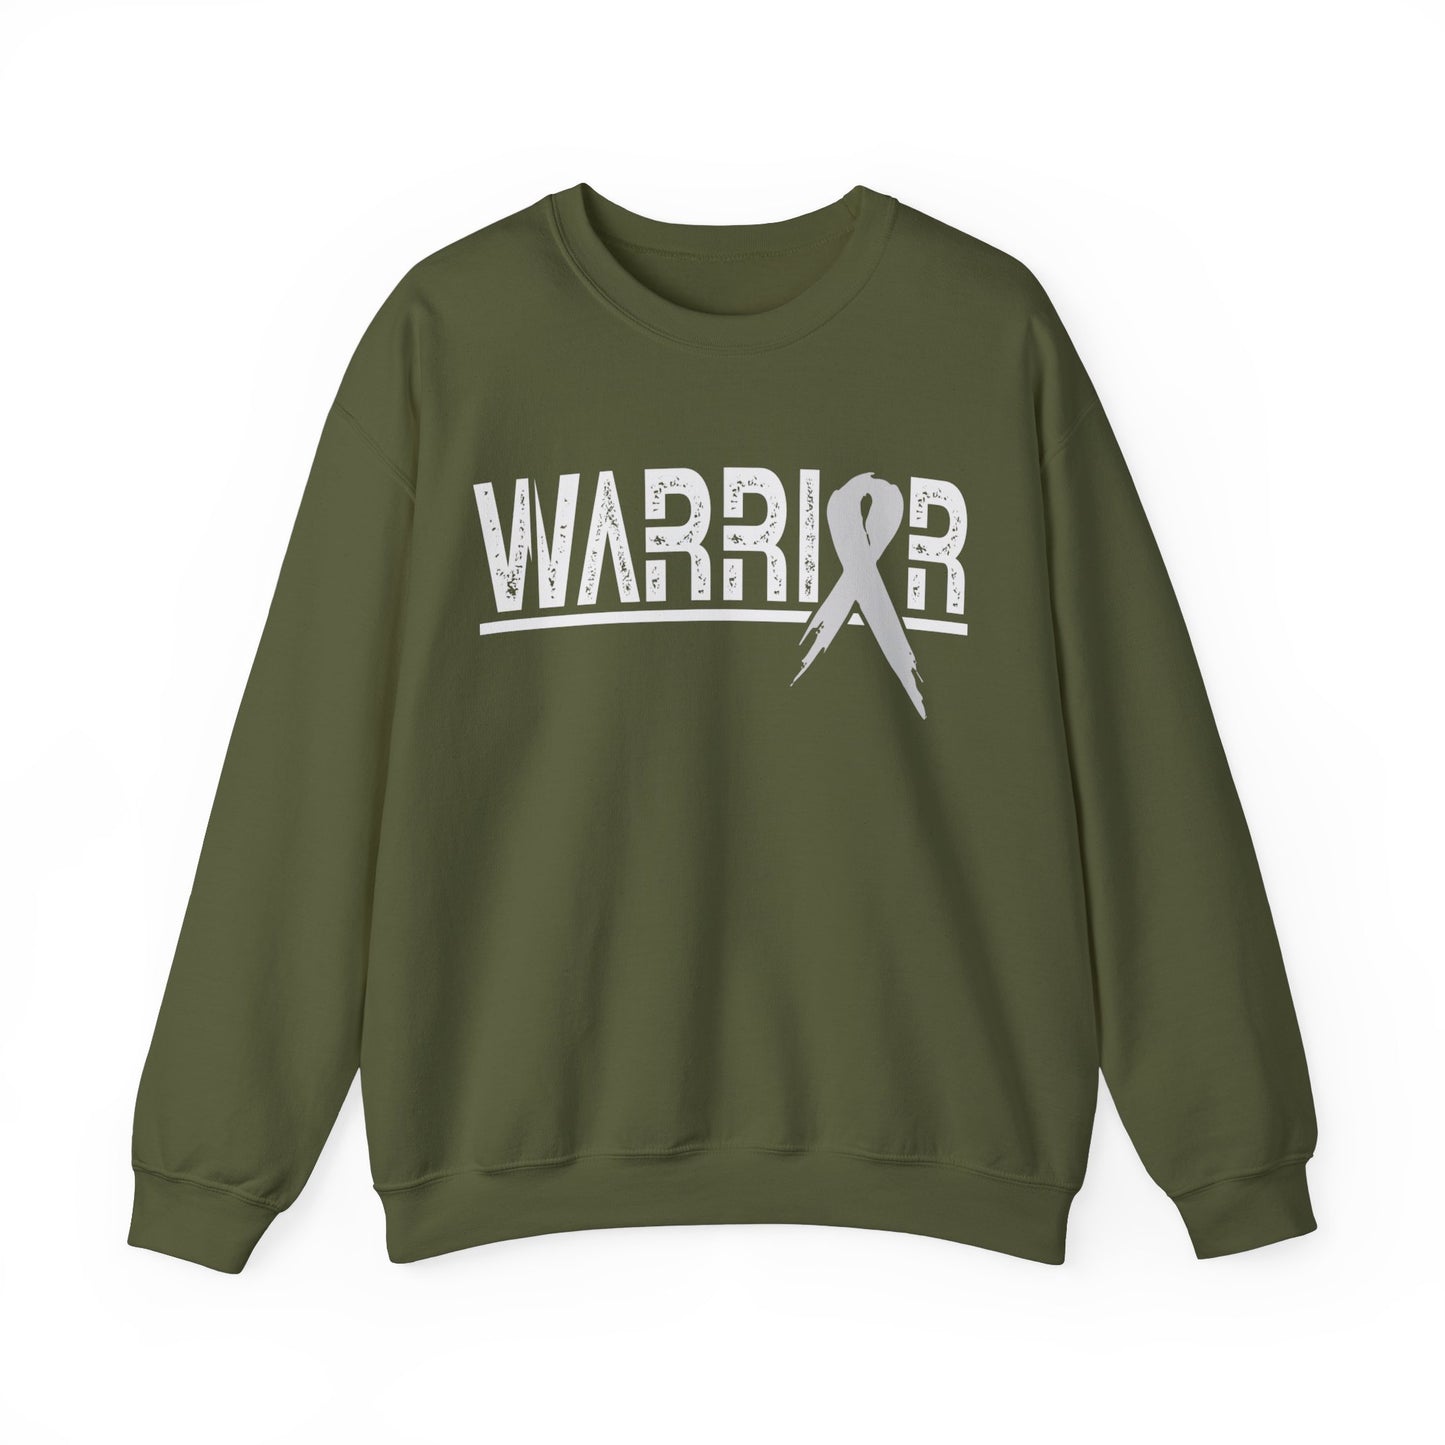 Cancer Warrior Sweatshirt Adult Unisex